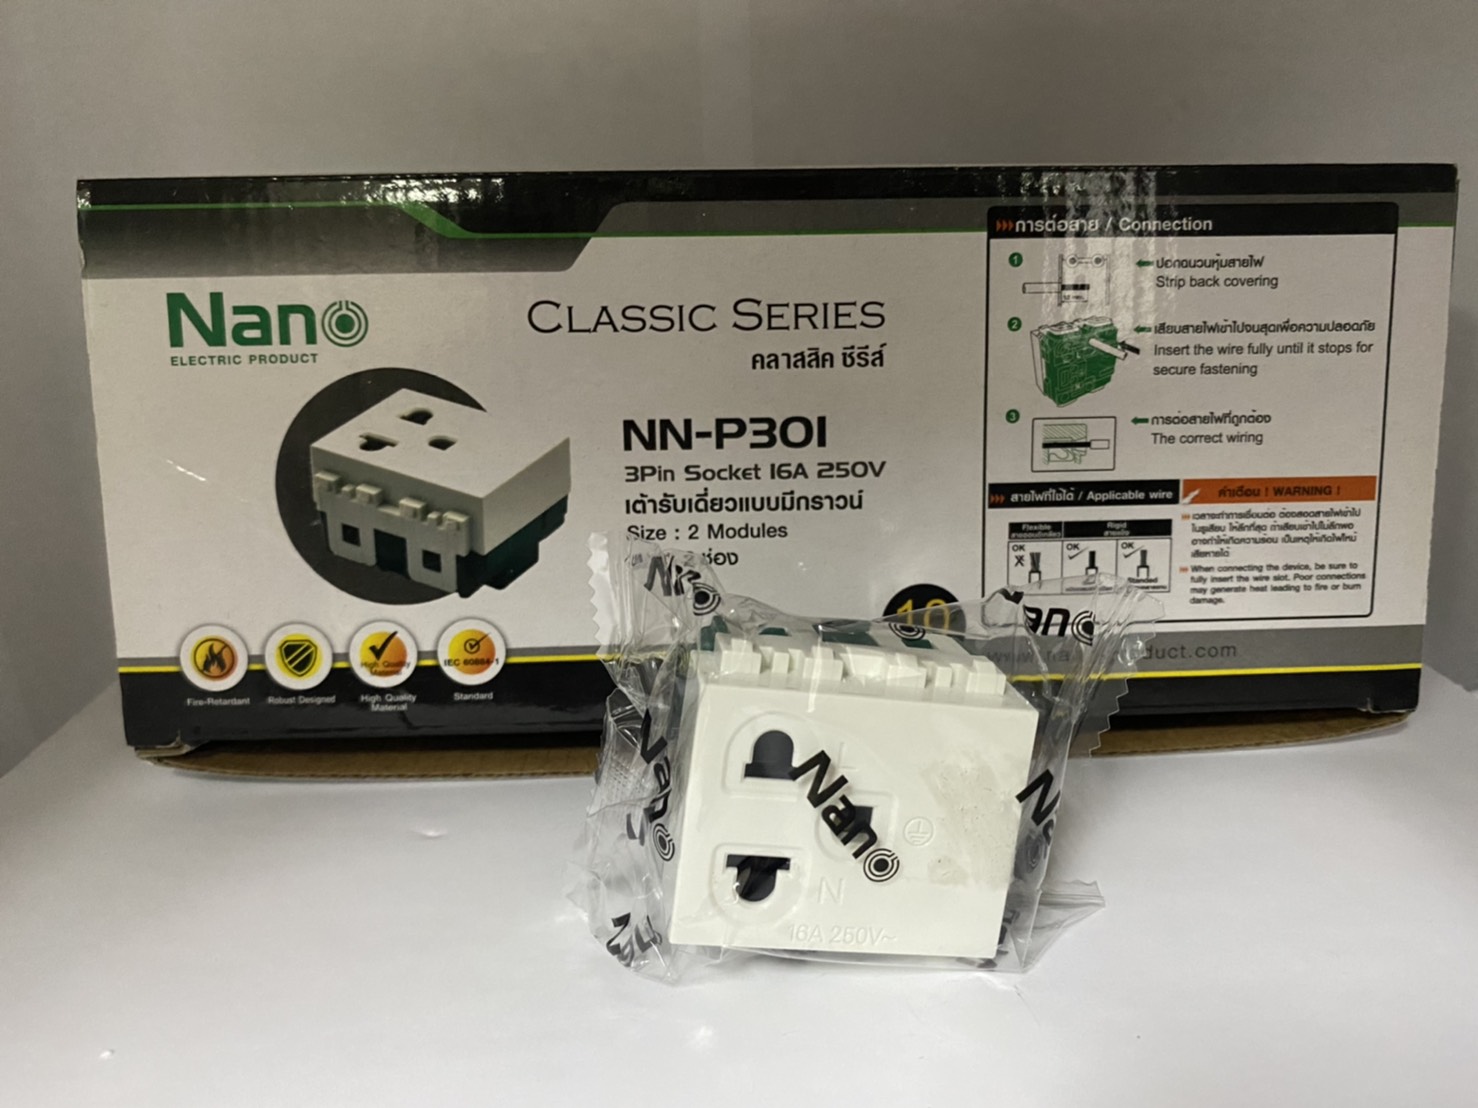 ปลั๊กกราวน์เดียว Classic series NANO NN-P301